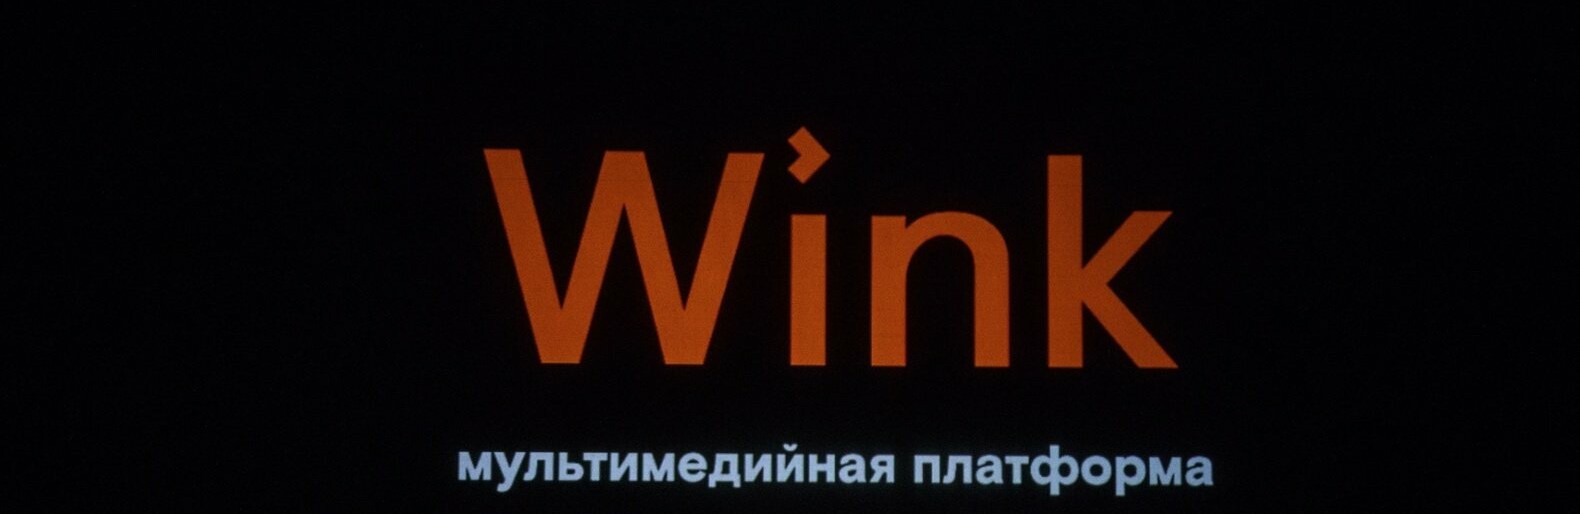 Ростелеком почему винк. Wink Ростелеком. Wink логотип. Wink Ростелеком logo. Wink кинотеатр.